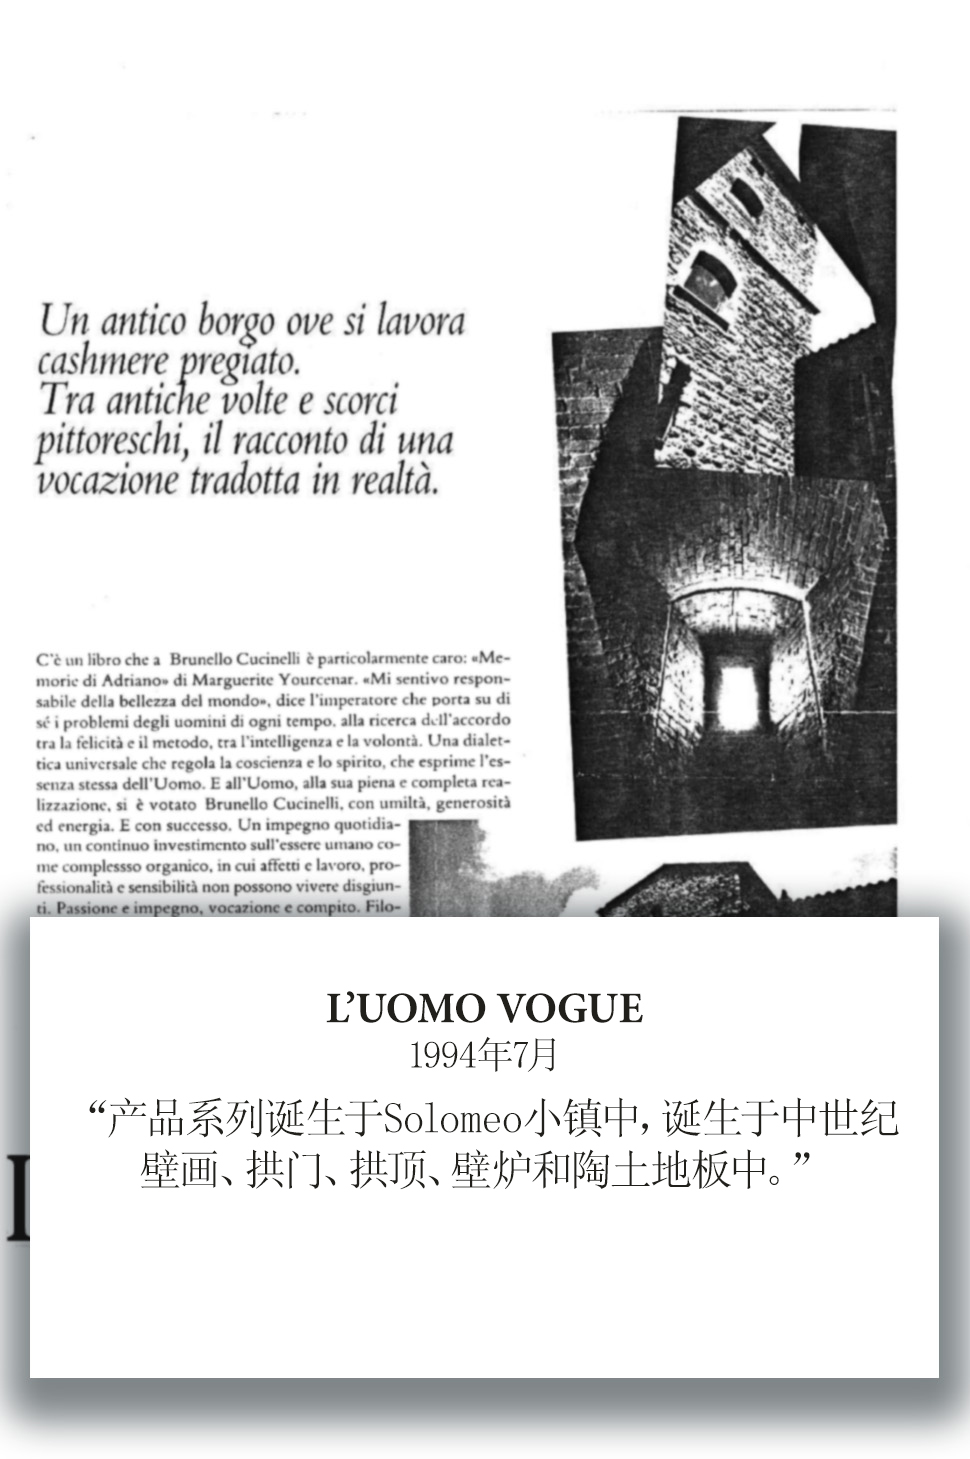 1994 L'Uomo Vogue